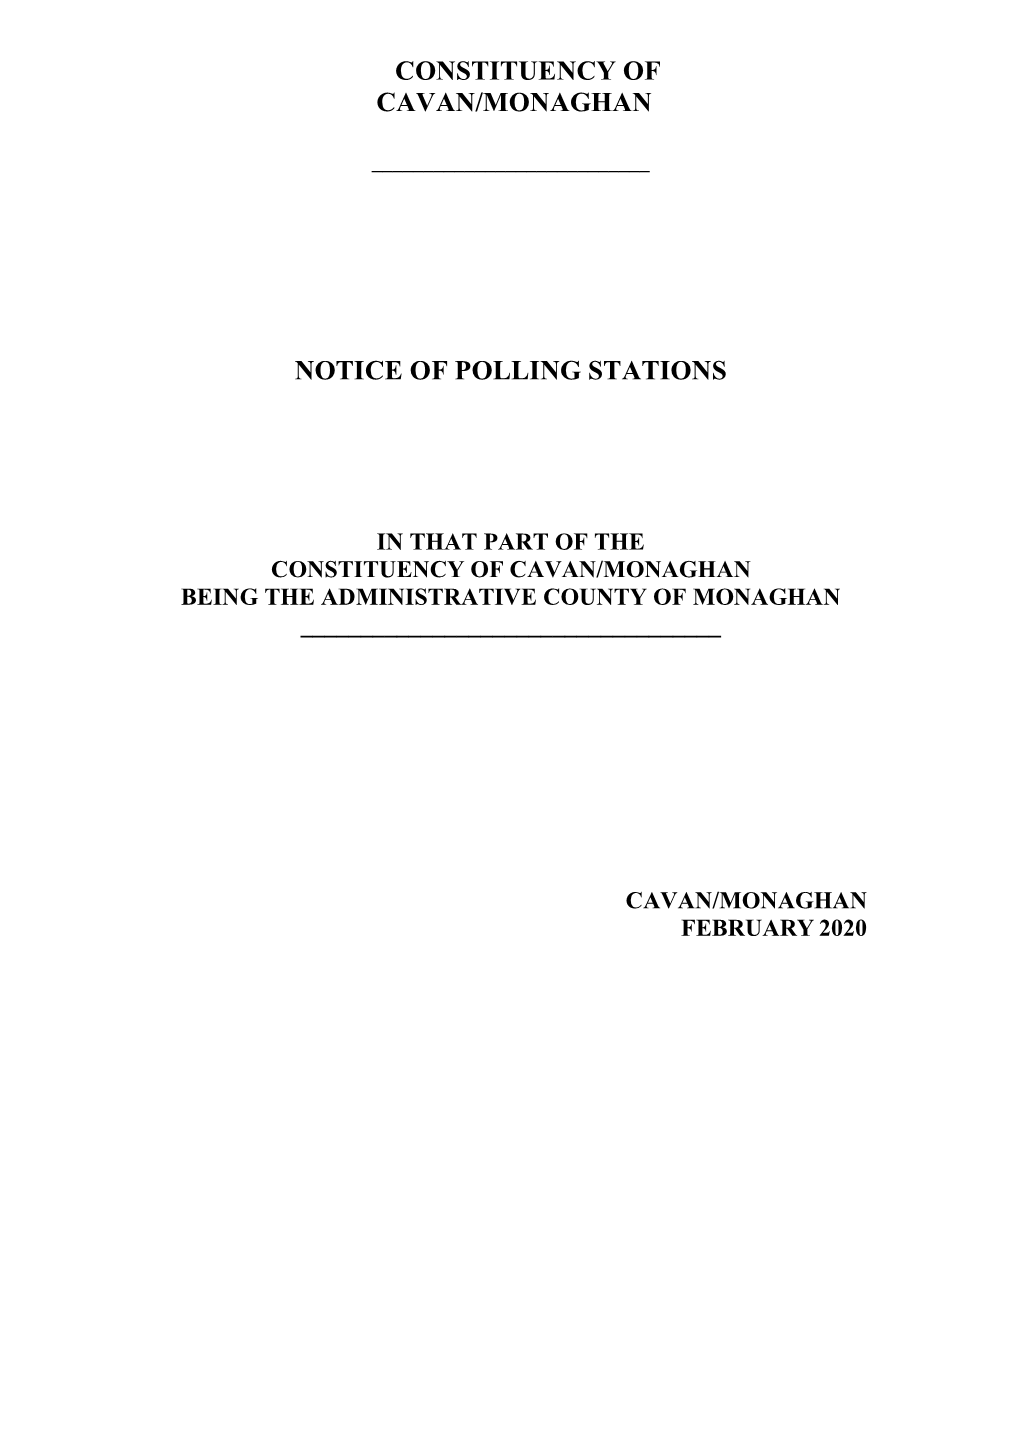 Polling Scheme